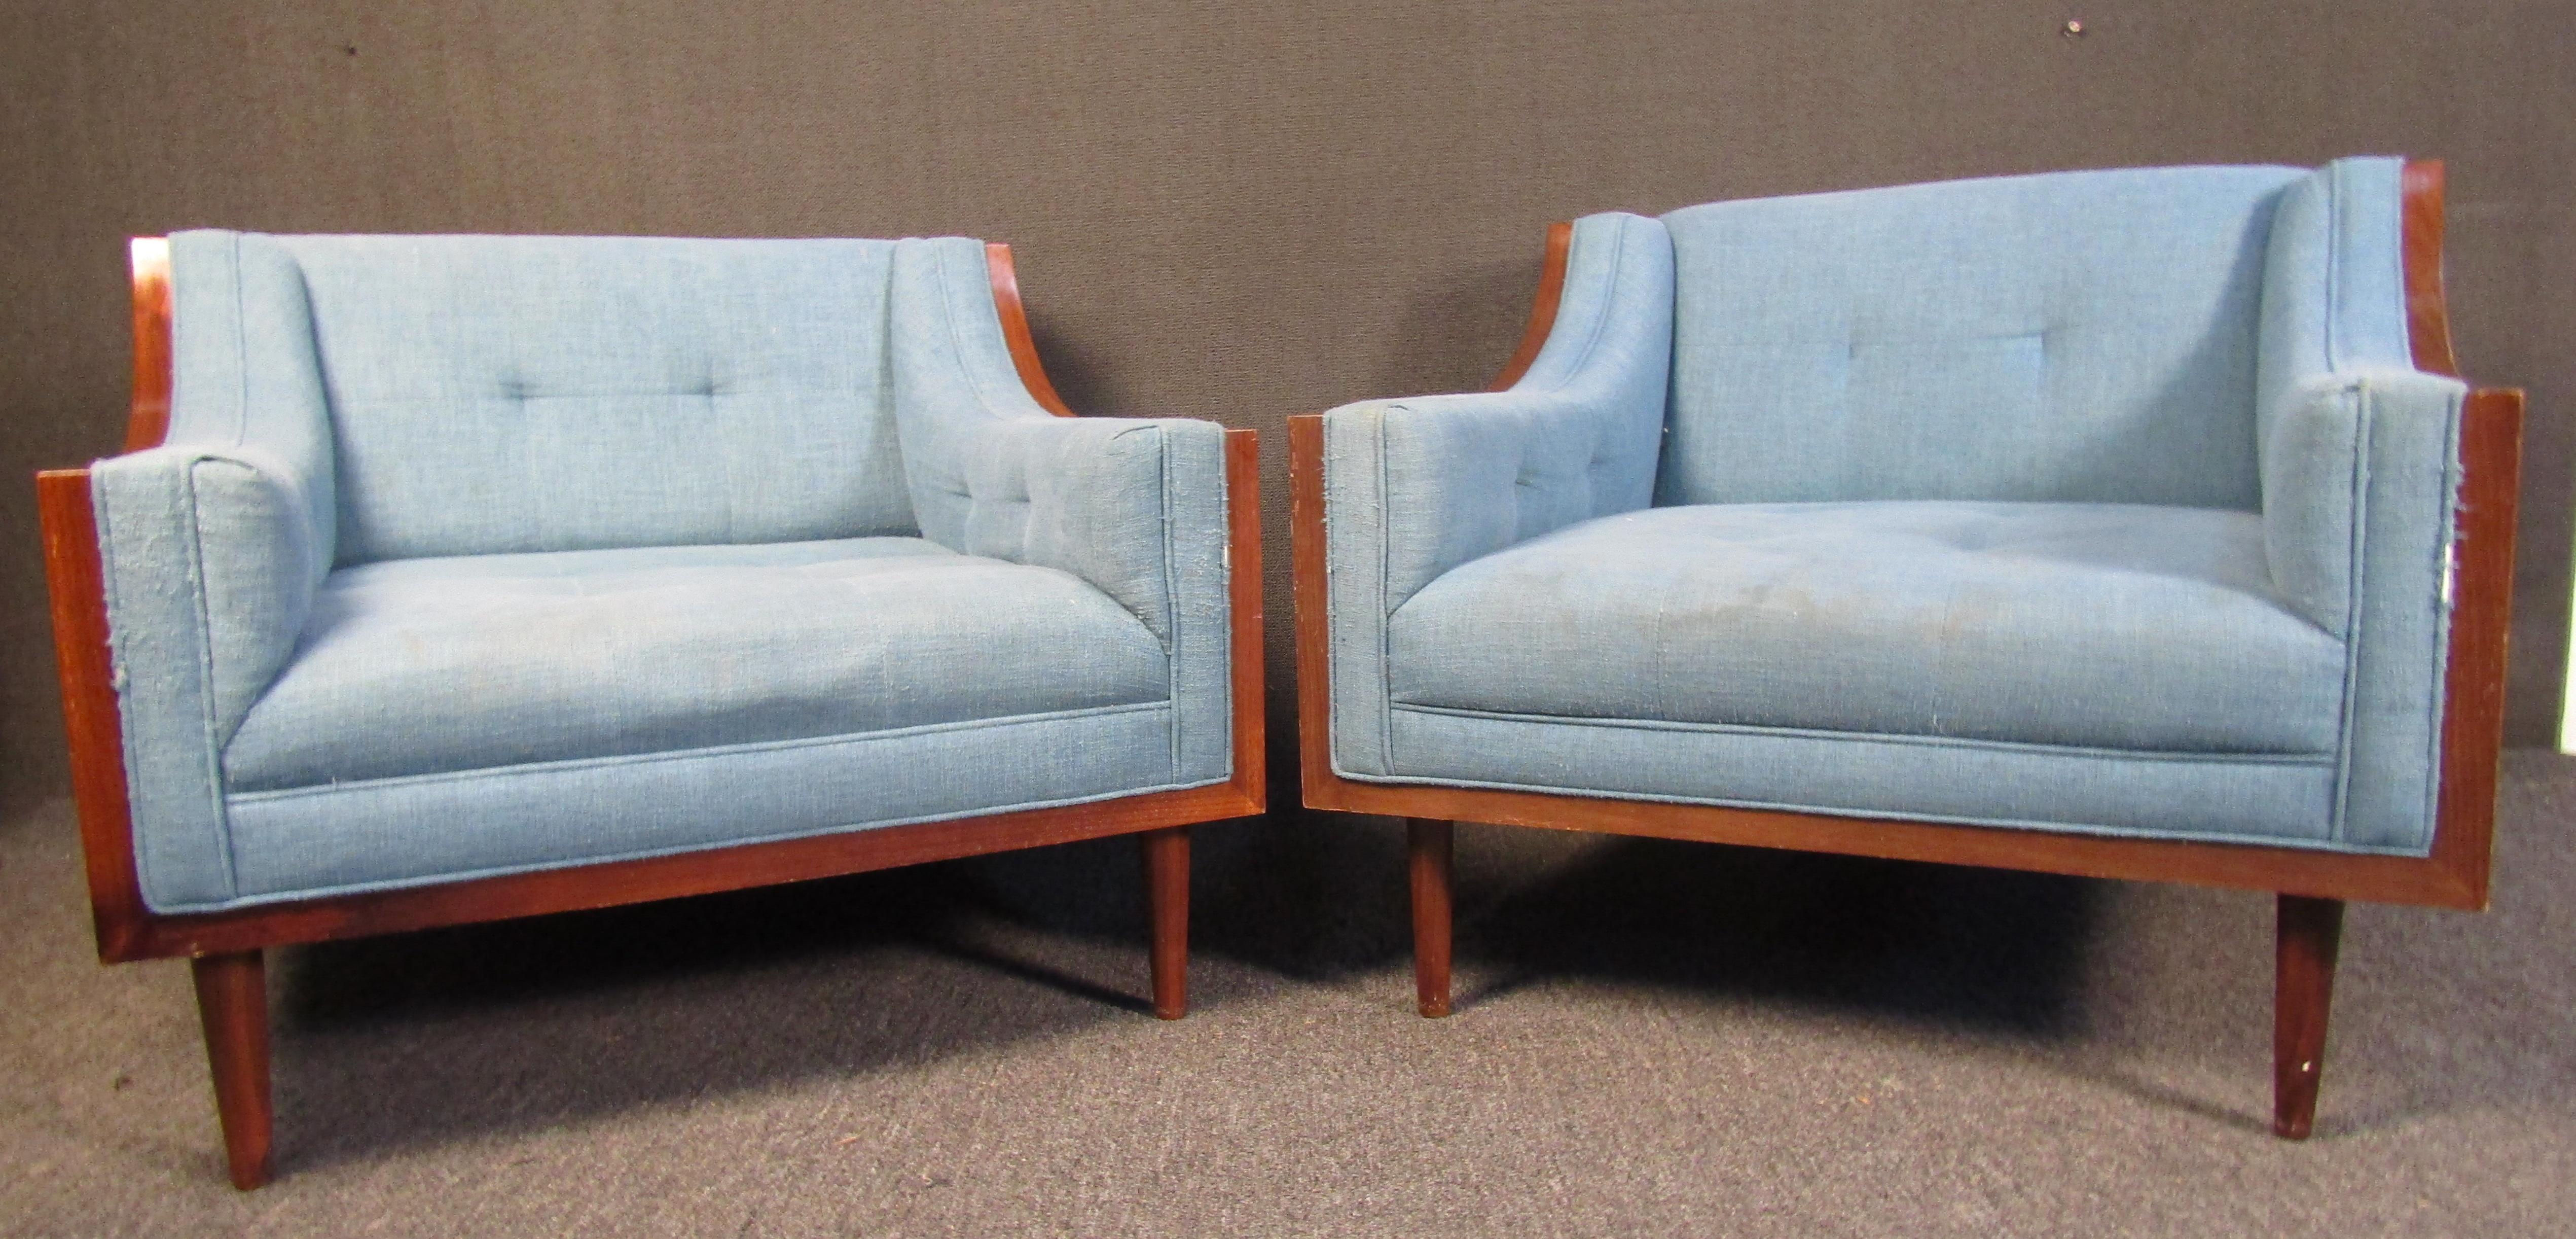 Set aus zwei modernen Vintage-Sesseln. Die Stühle sind mit einem hellen, babyblauen Stoff gepolstert und stehen auf konischen Beinen in tiefen, farbenfrohen Walnussschalen. Diese stilvollen und studiös wirkenden Loungesessel wären eine schöne